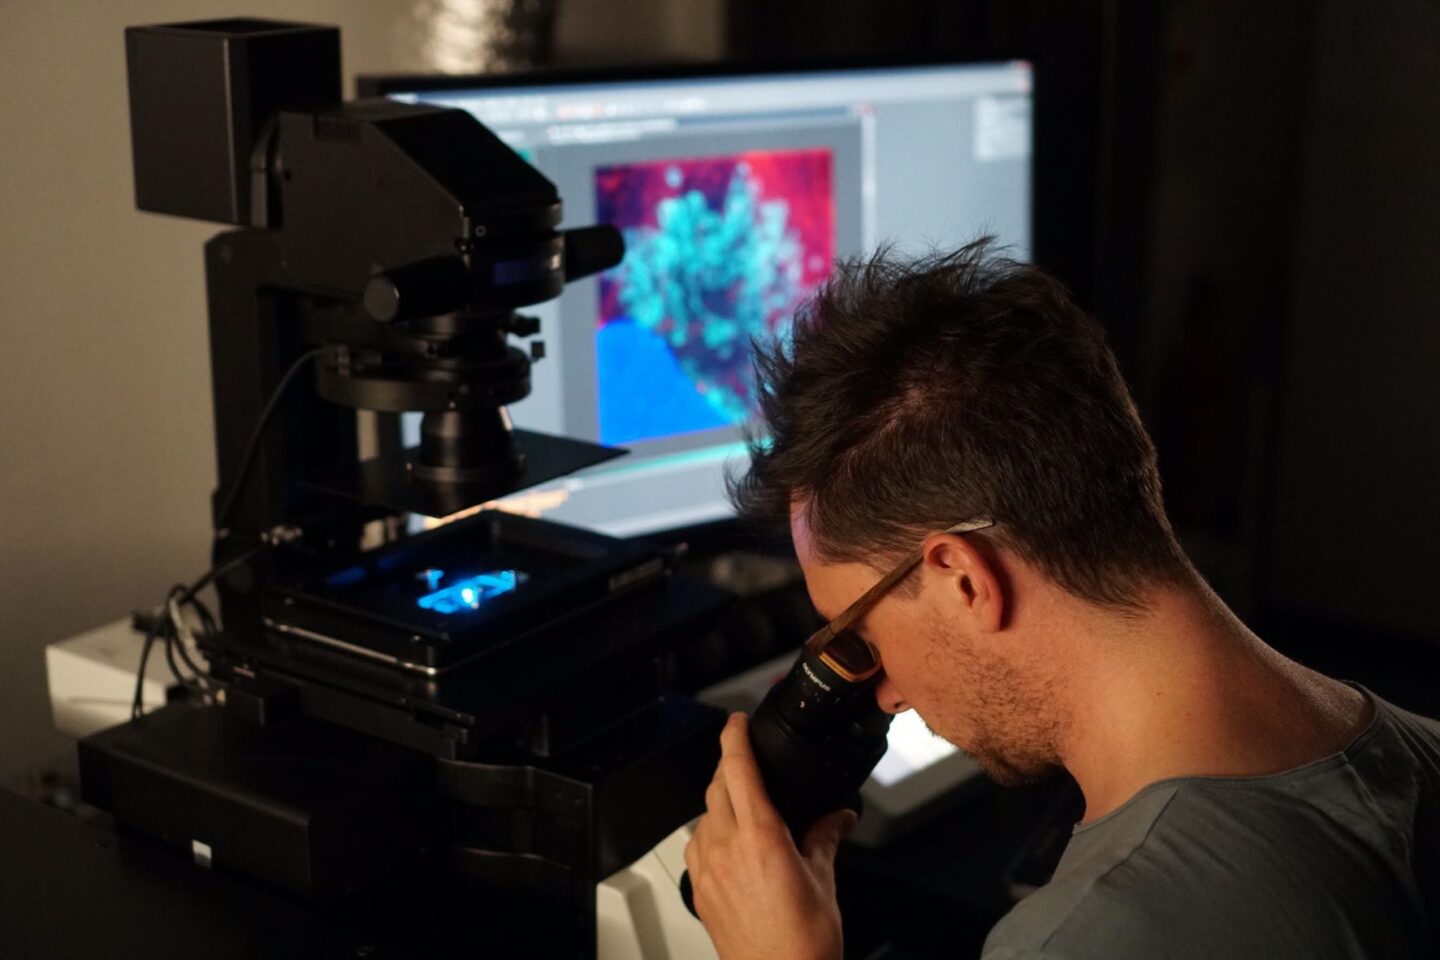 super-resolution microscope in use